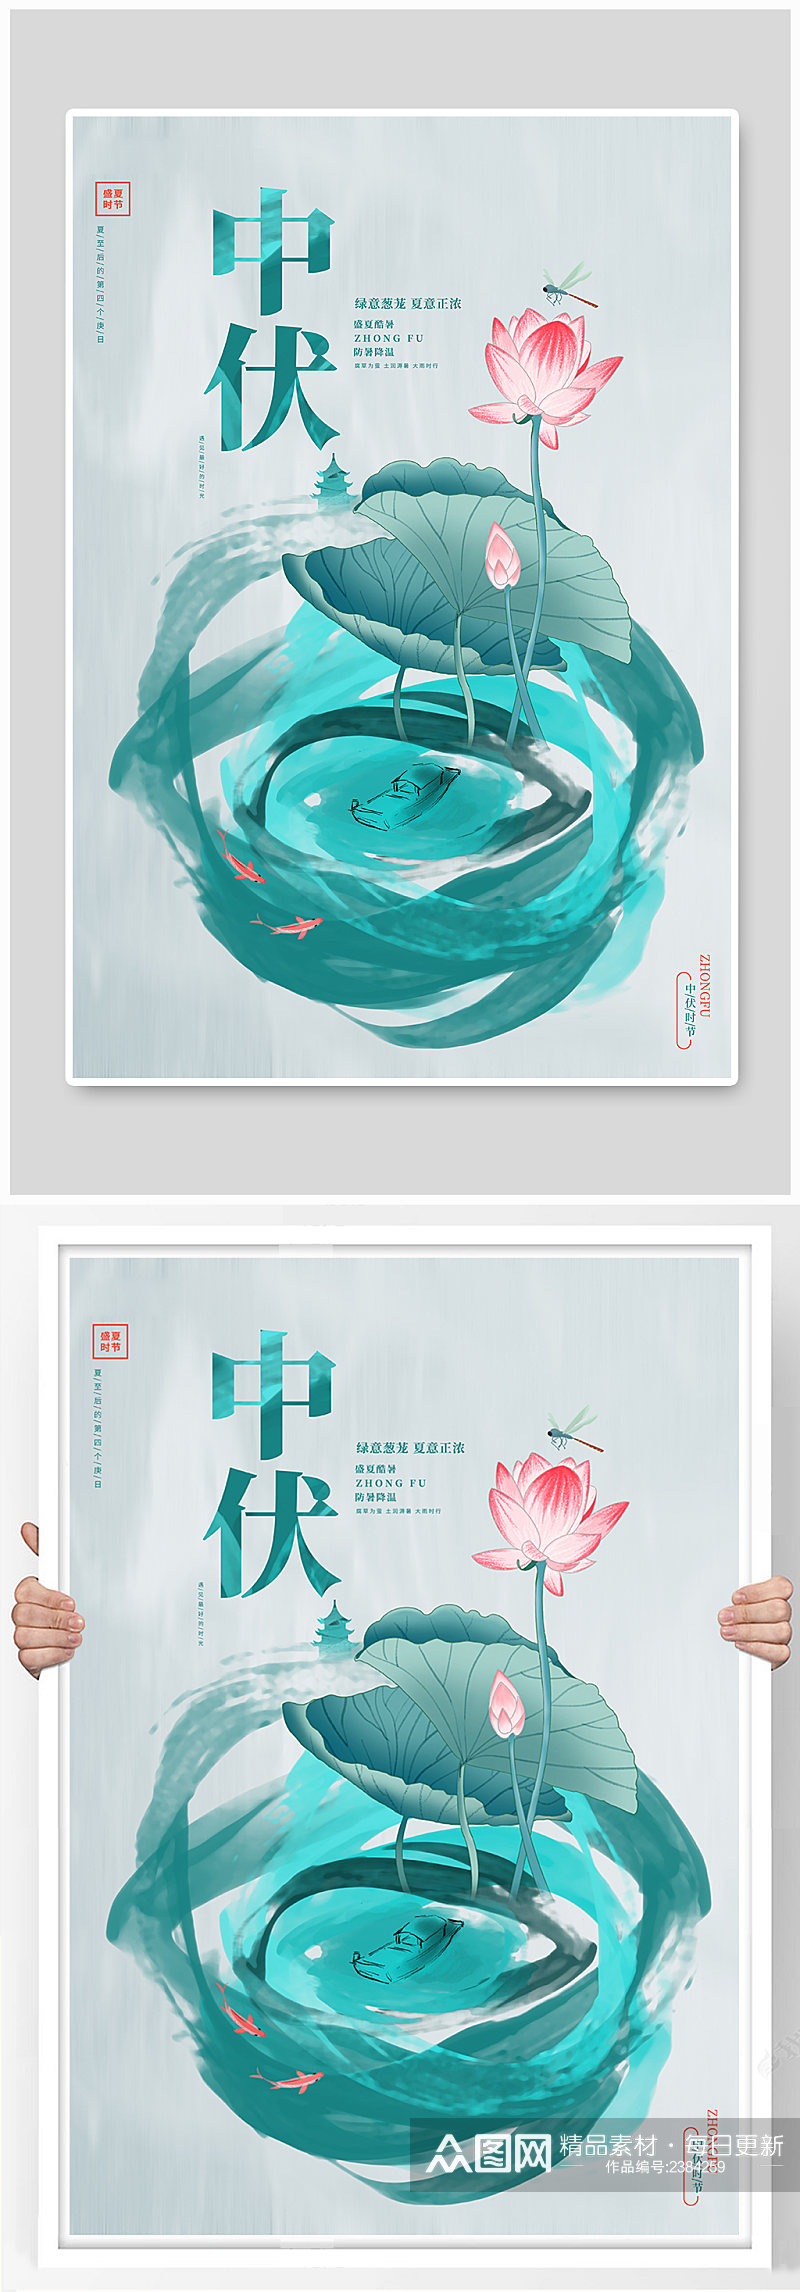 简约唯美水彩中国风中伏夏季宣传海报素材